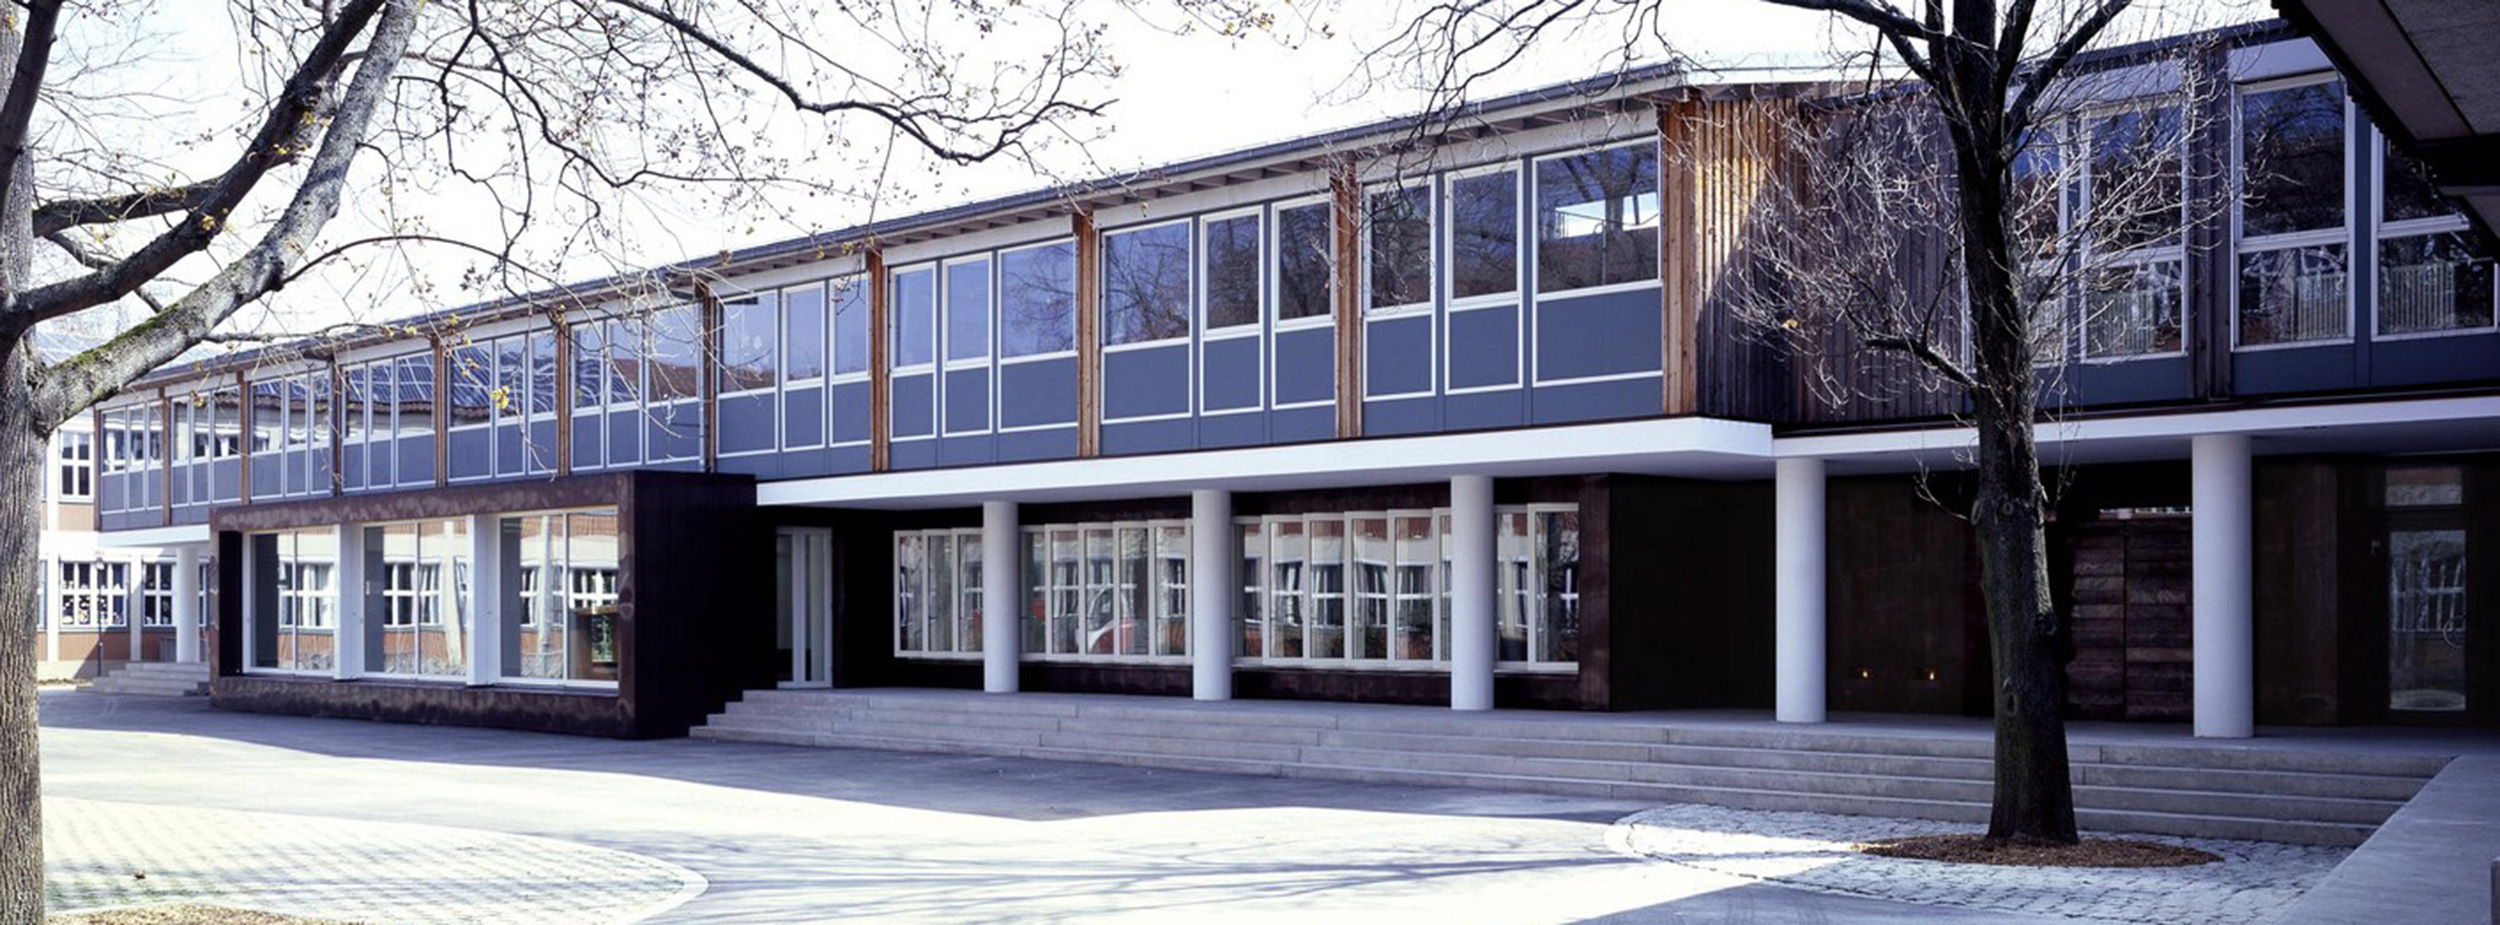 Außenansicht Justinus-Kerner-Schule, ehemals Oststadtschule